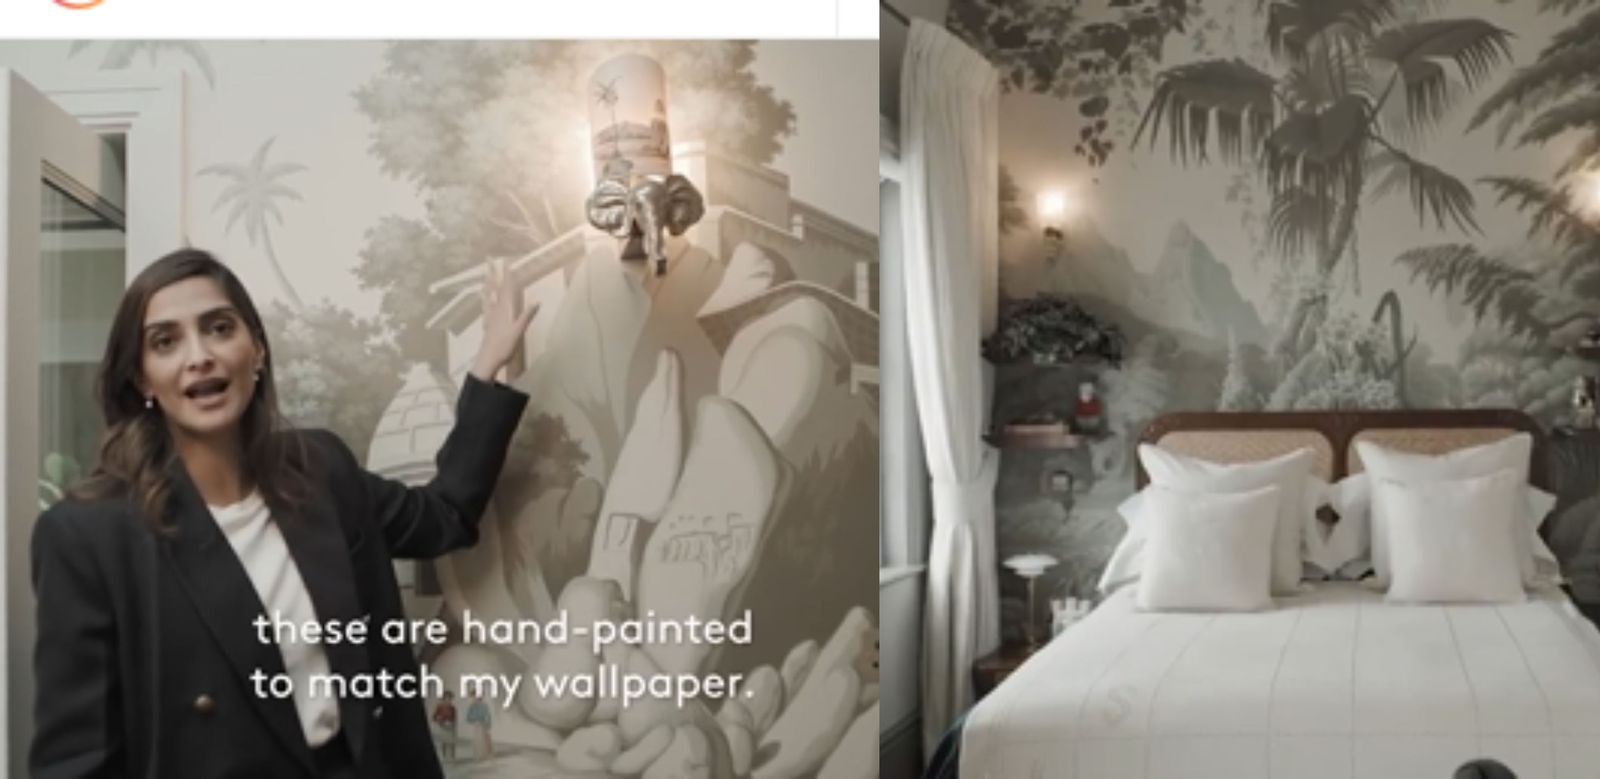 सोनम कपूर ने वीडियो शेयर कर दिखाया अपना लंदन वाला घर, घर सजाने इंडिया से आई हैं सामान 